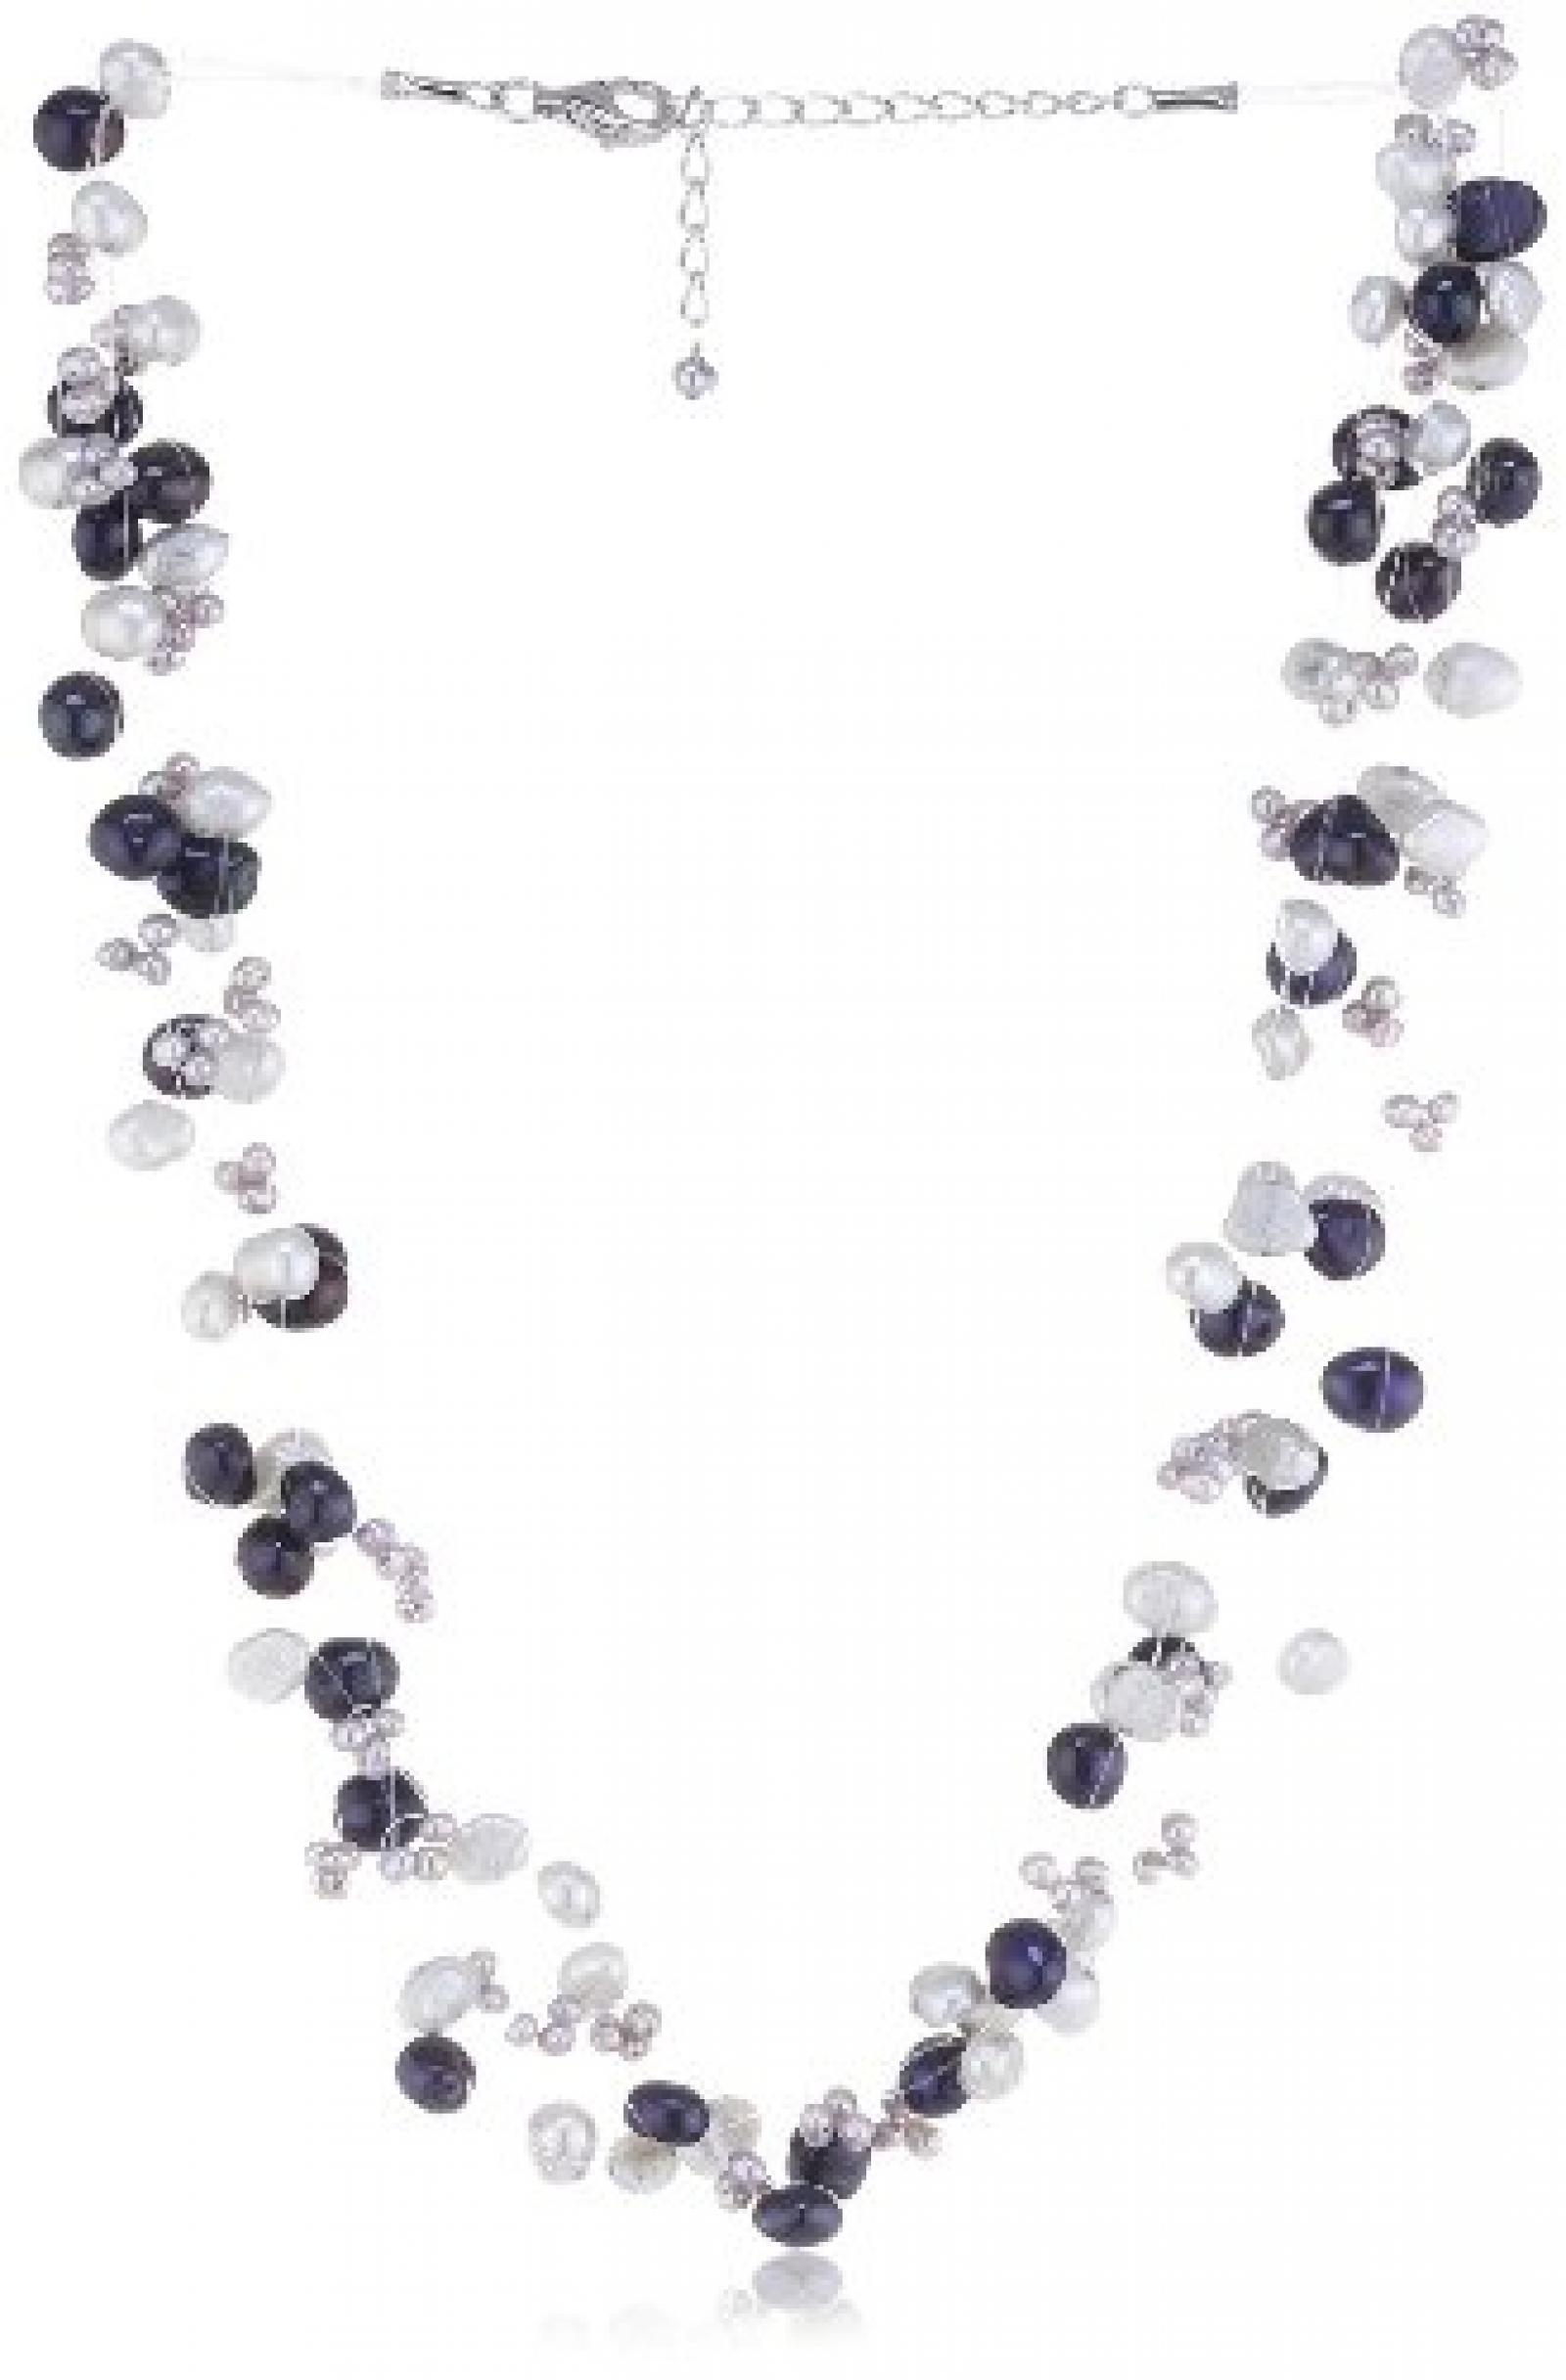 Valero Pearls Fashion Collection Damen-Kette Hochwertige Süßwasser-Zuchtperlen in ca.  4-6 mm Barock silberblau / hellgrau / blauviolett 925 Sterling Silber    43 cm + 5 cm Verlängerung   60200101 